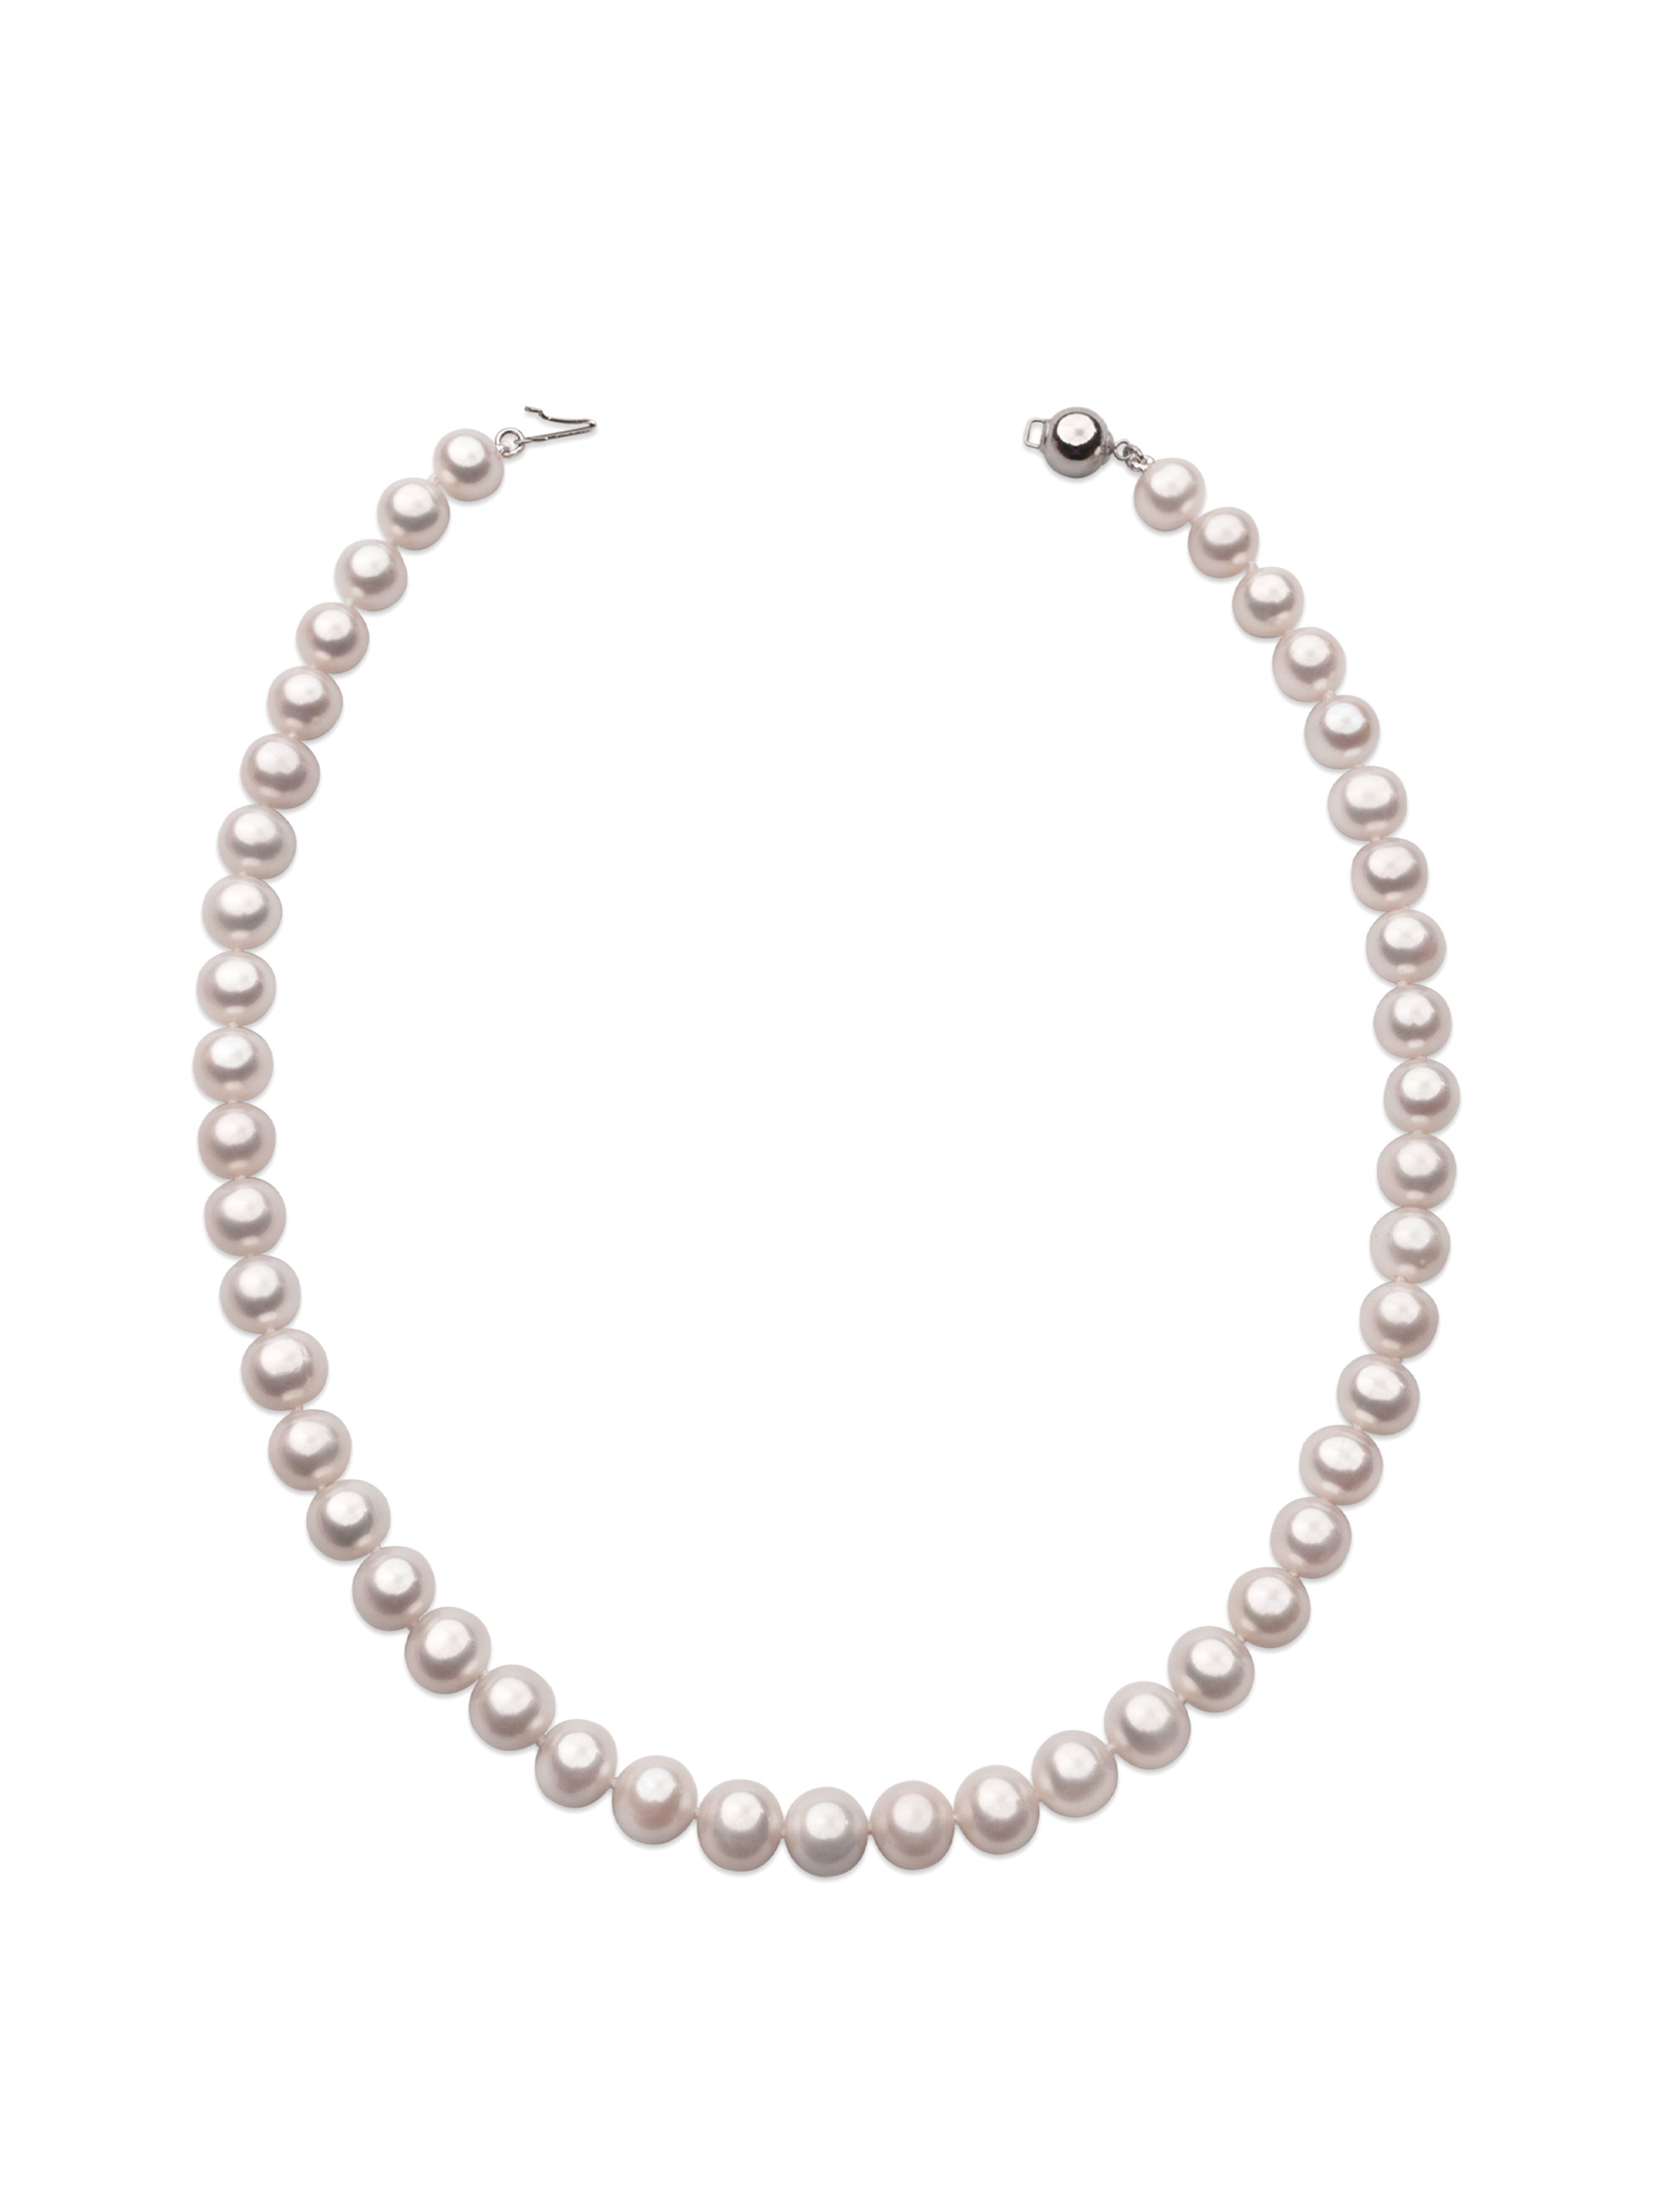 Collar de perlas cultivadas naturales de agua dulce redondas de 8,5 - 9,5 mm